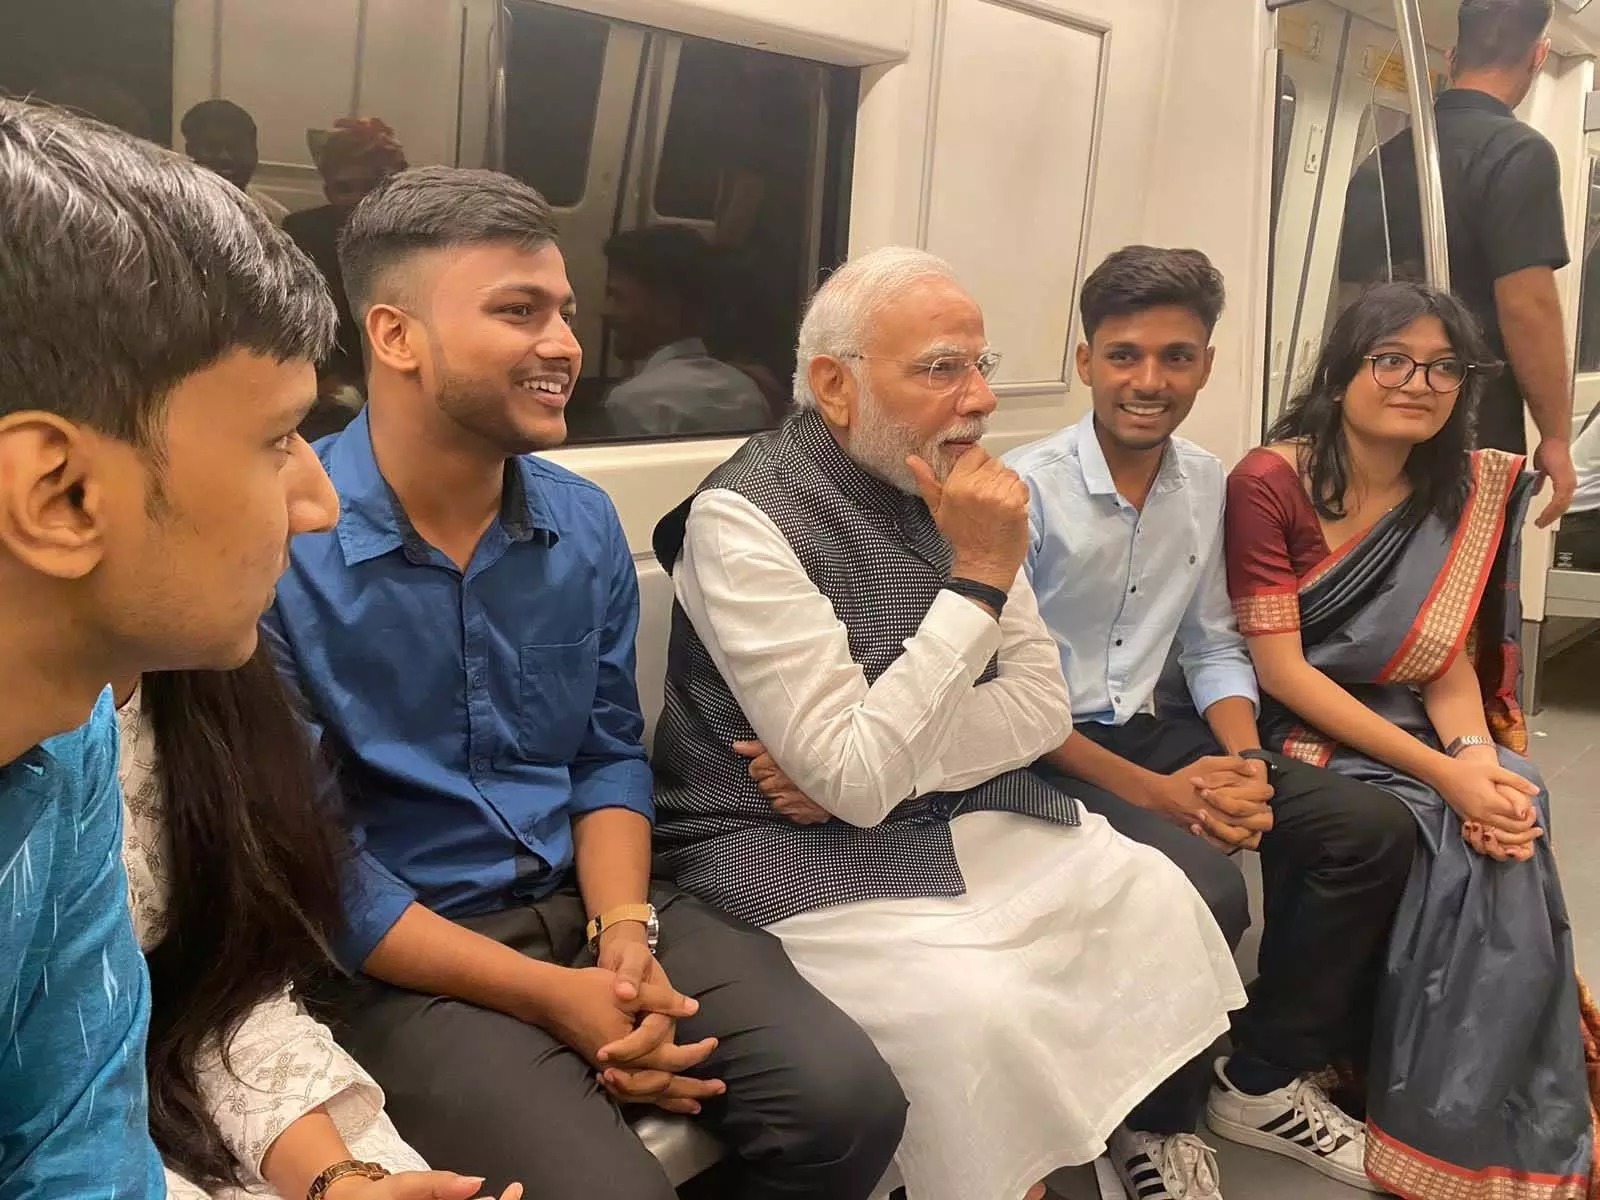 दिल्ली विश्वविद्यालय के शताब्दी समारोह में शामिल होने के लिए, प्रधानमंत्री नरेंद्र मोदी ने मेट्रो में किया सफर, देख़ लोग होए हैरान